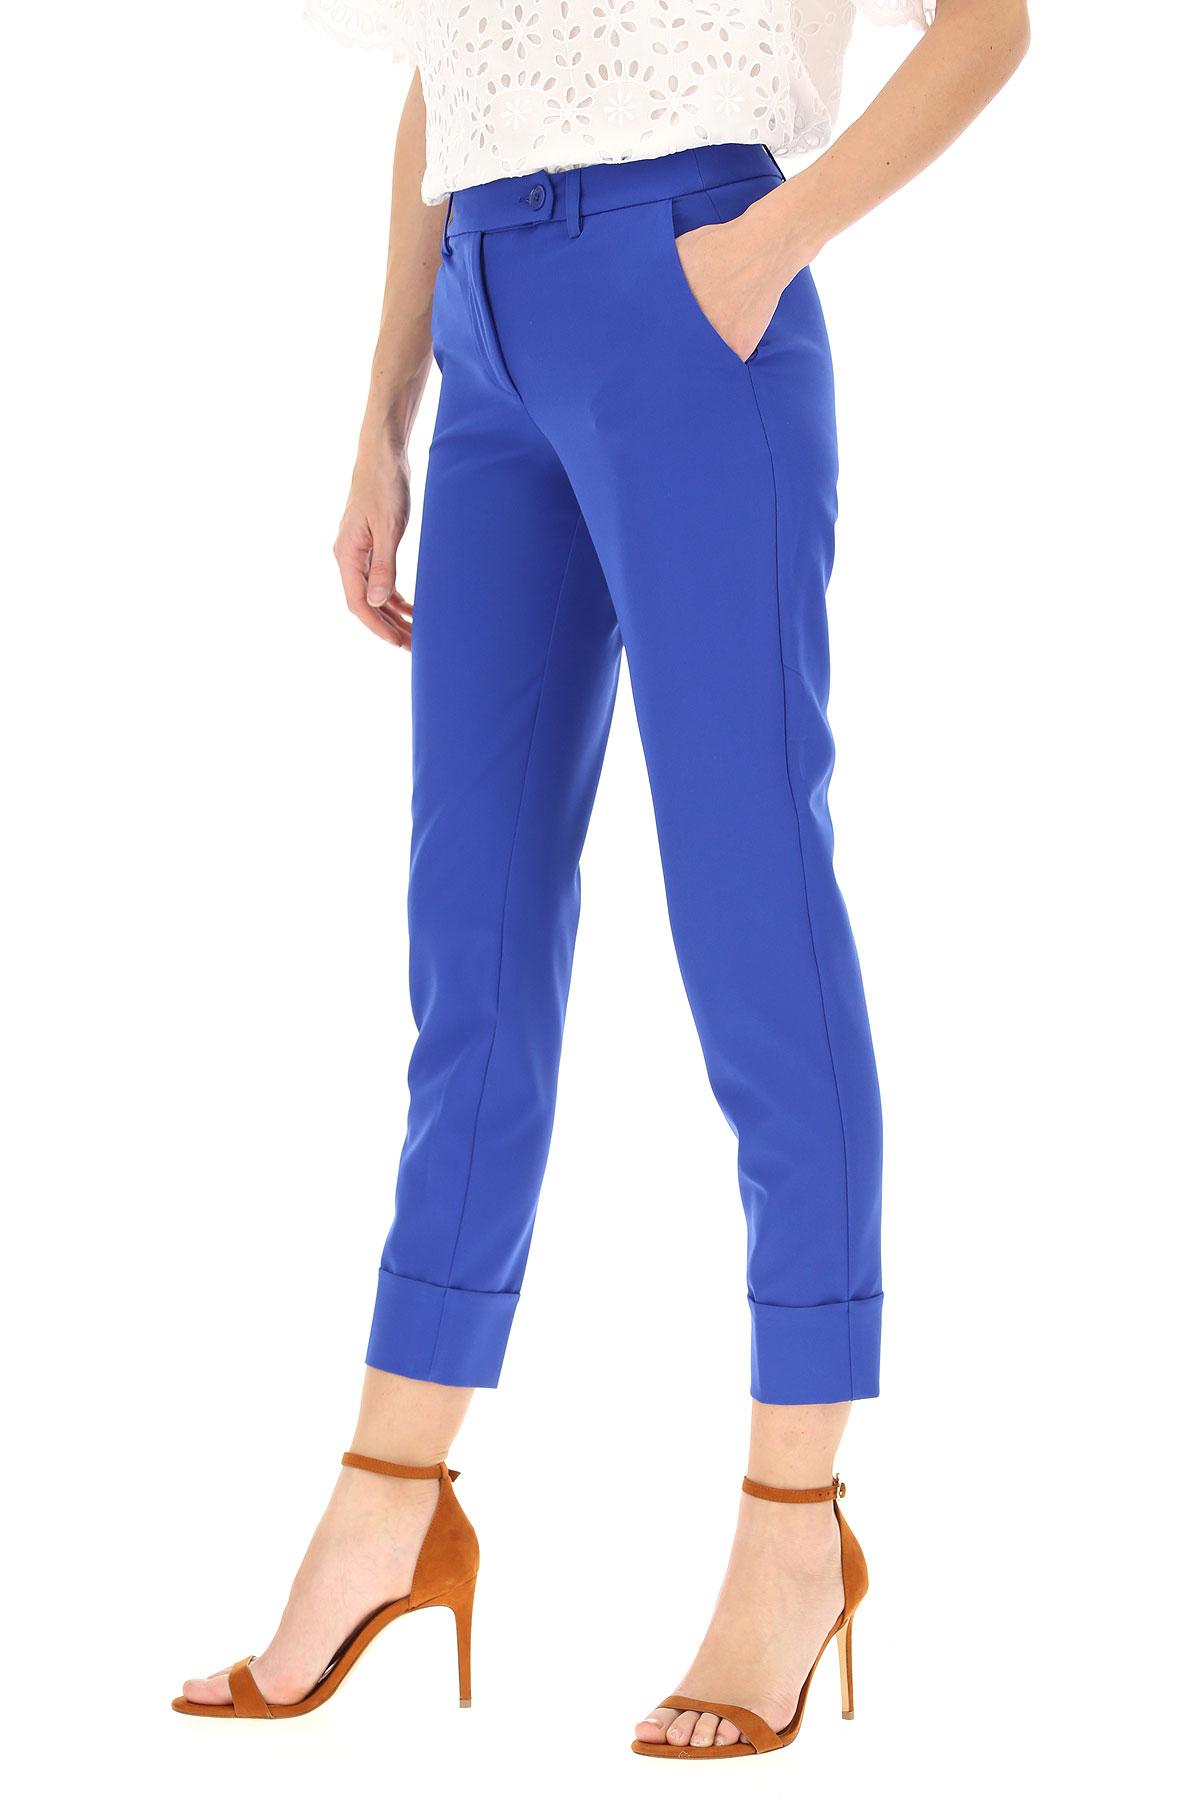 Blugirl Blumarine Pants For Women in Blue - Lyst